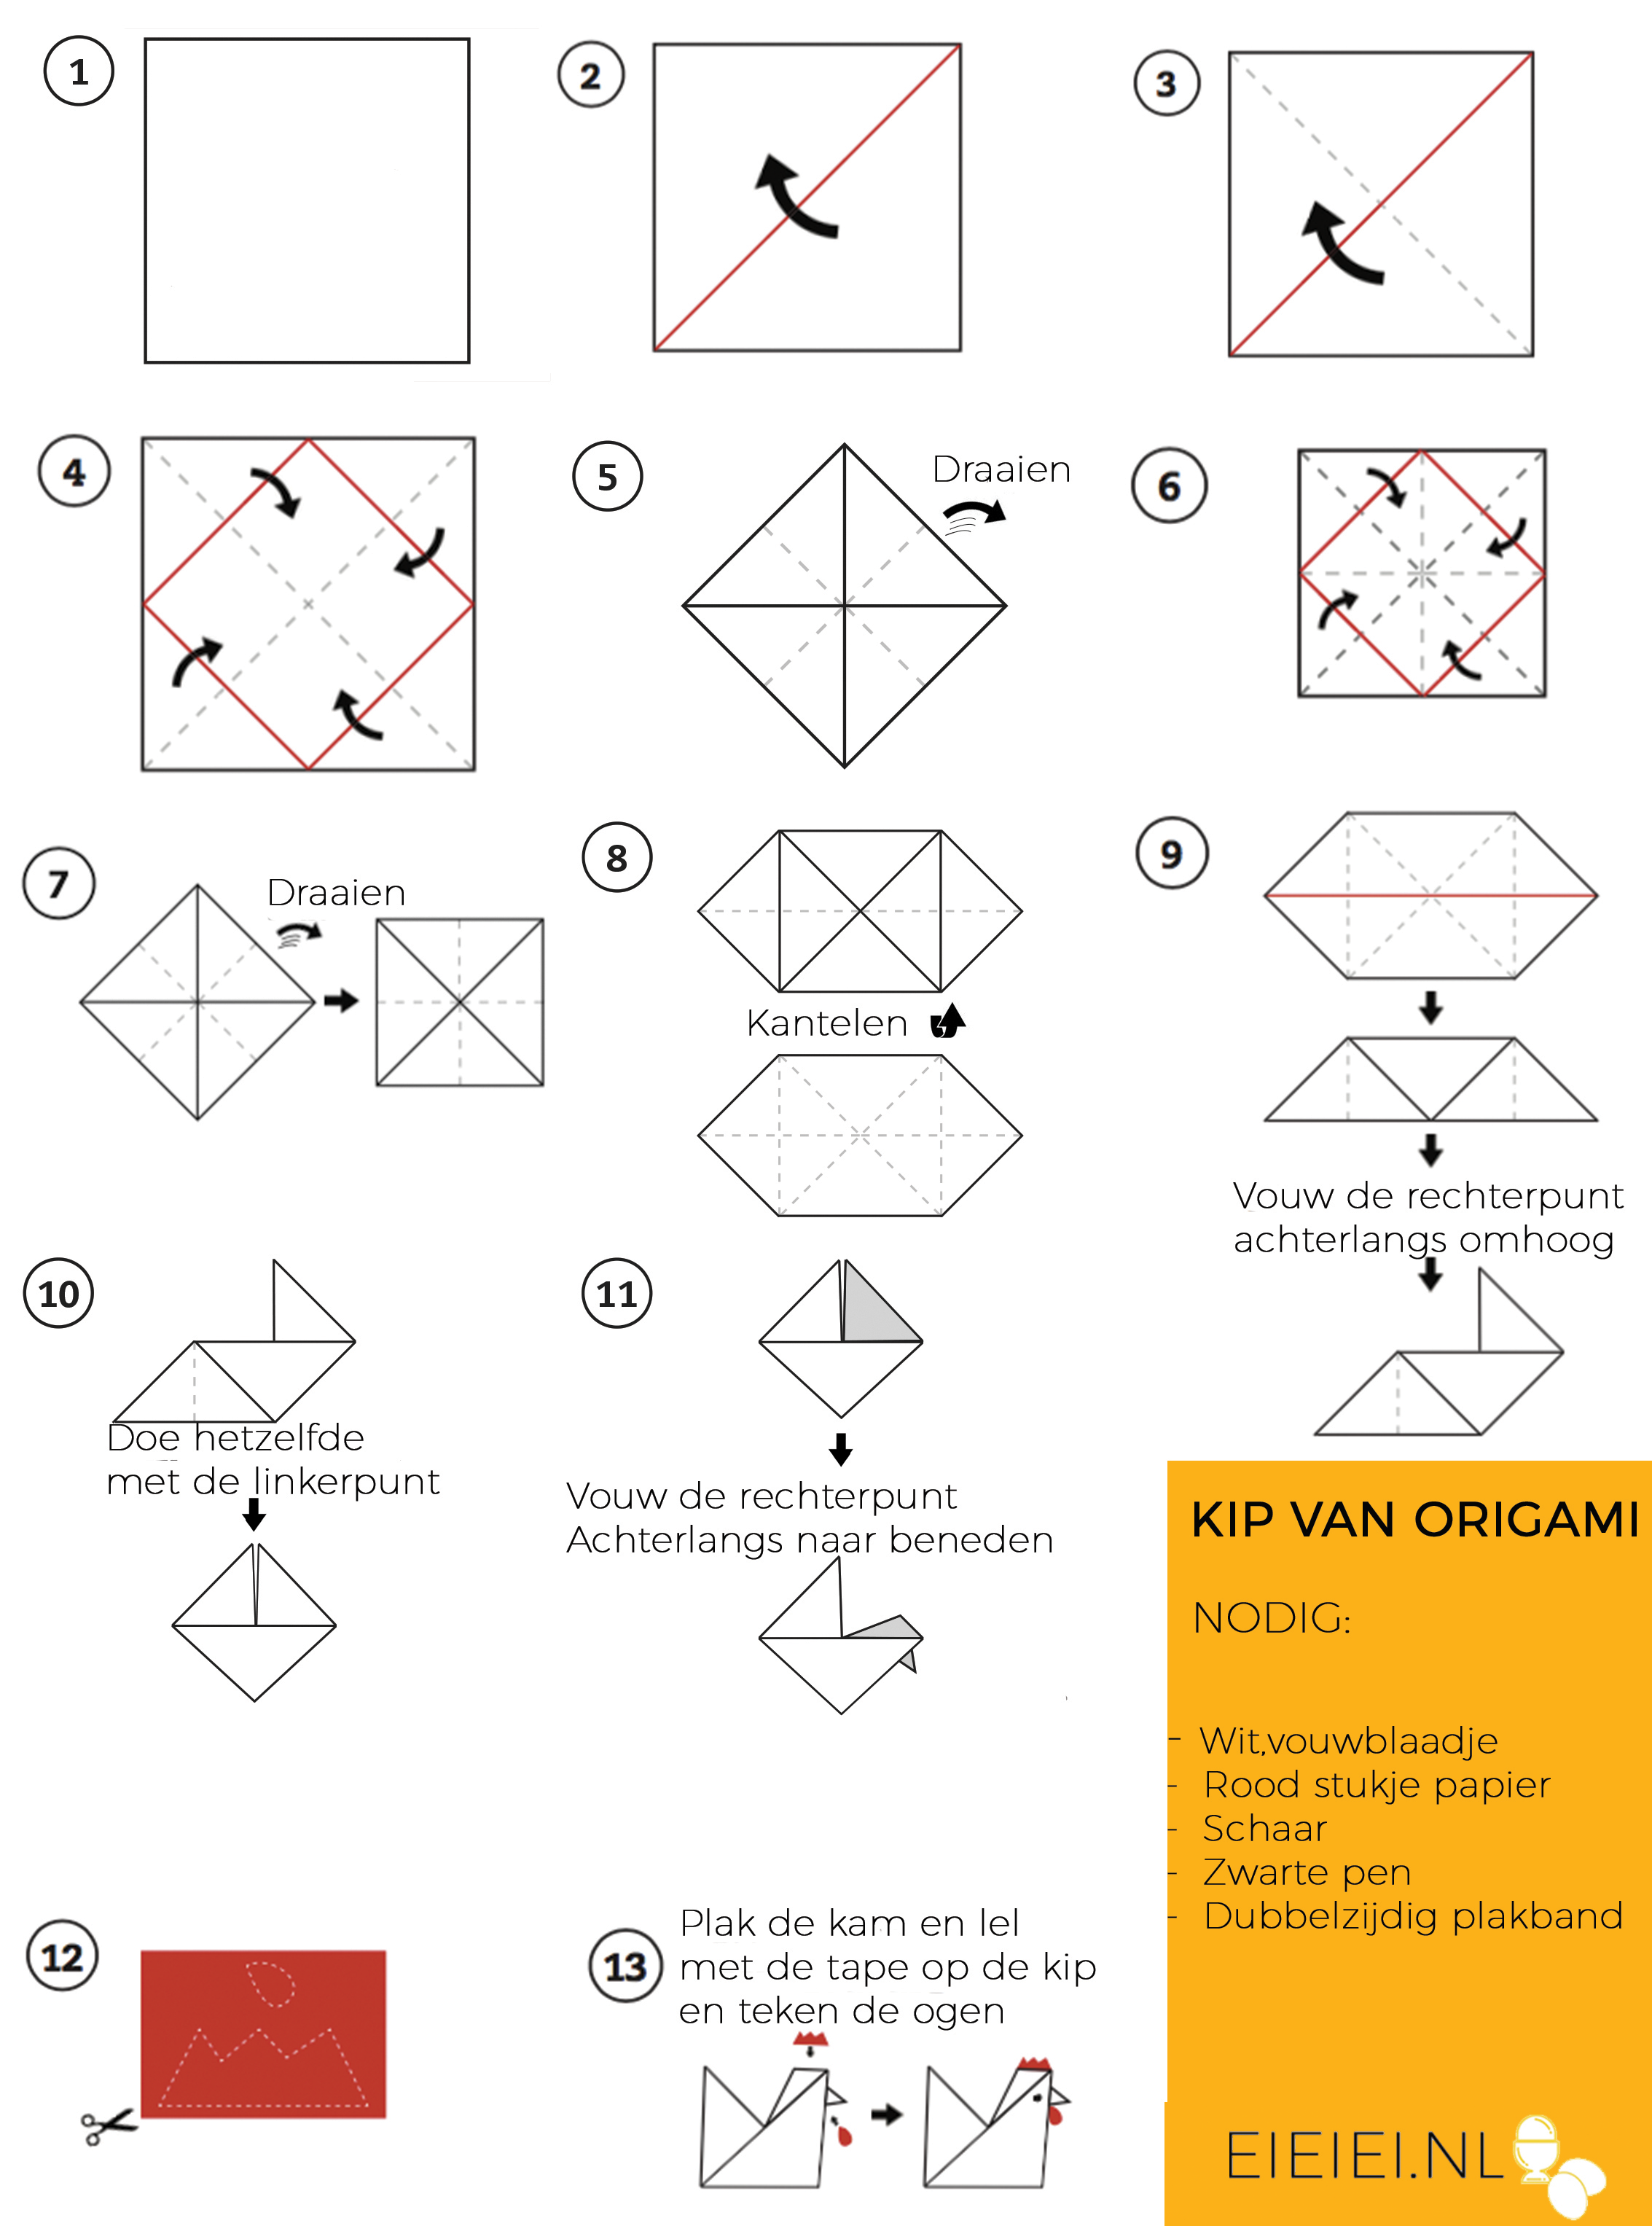 absorptie punch letterlijk DIY: vouw een origami kip in 5 minuten